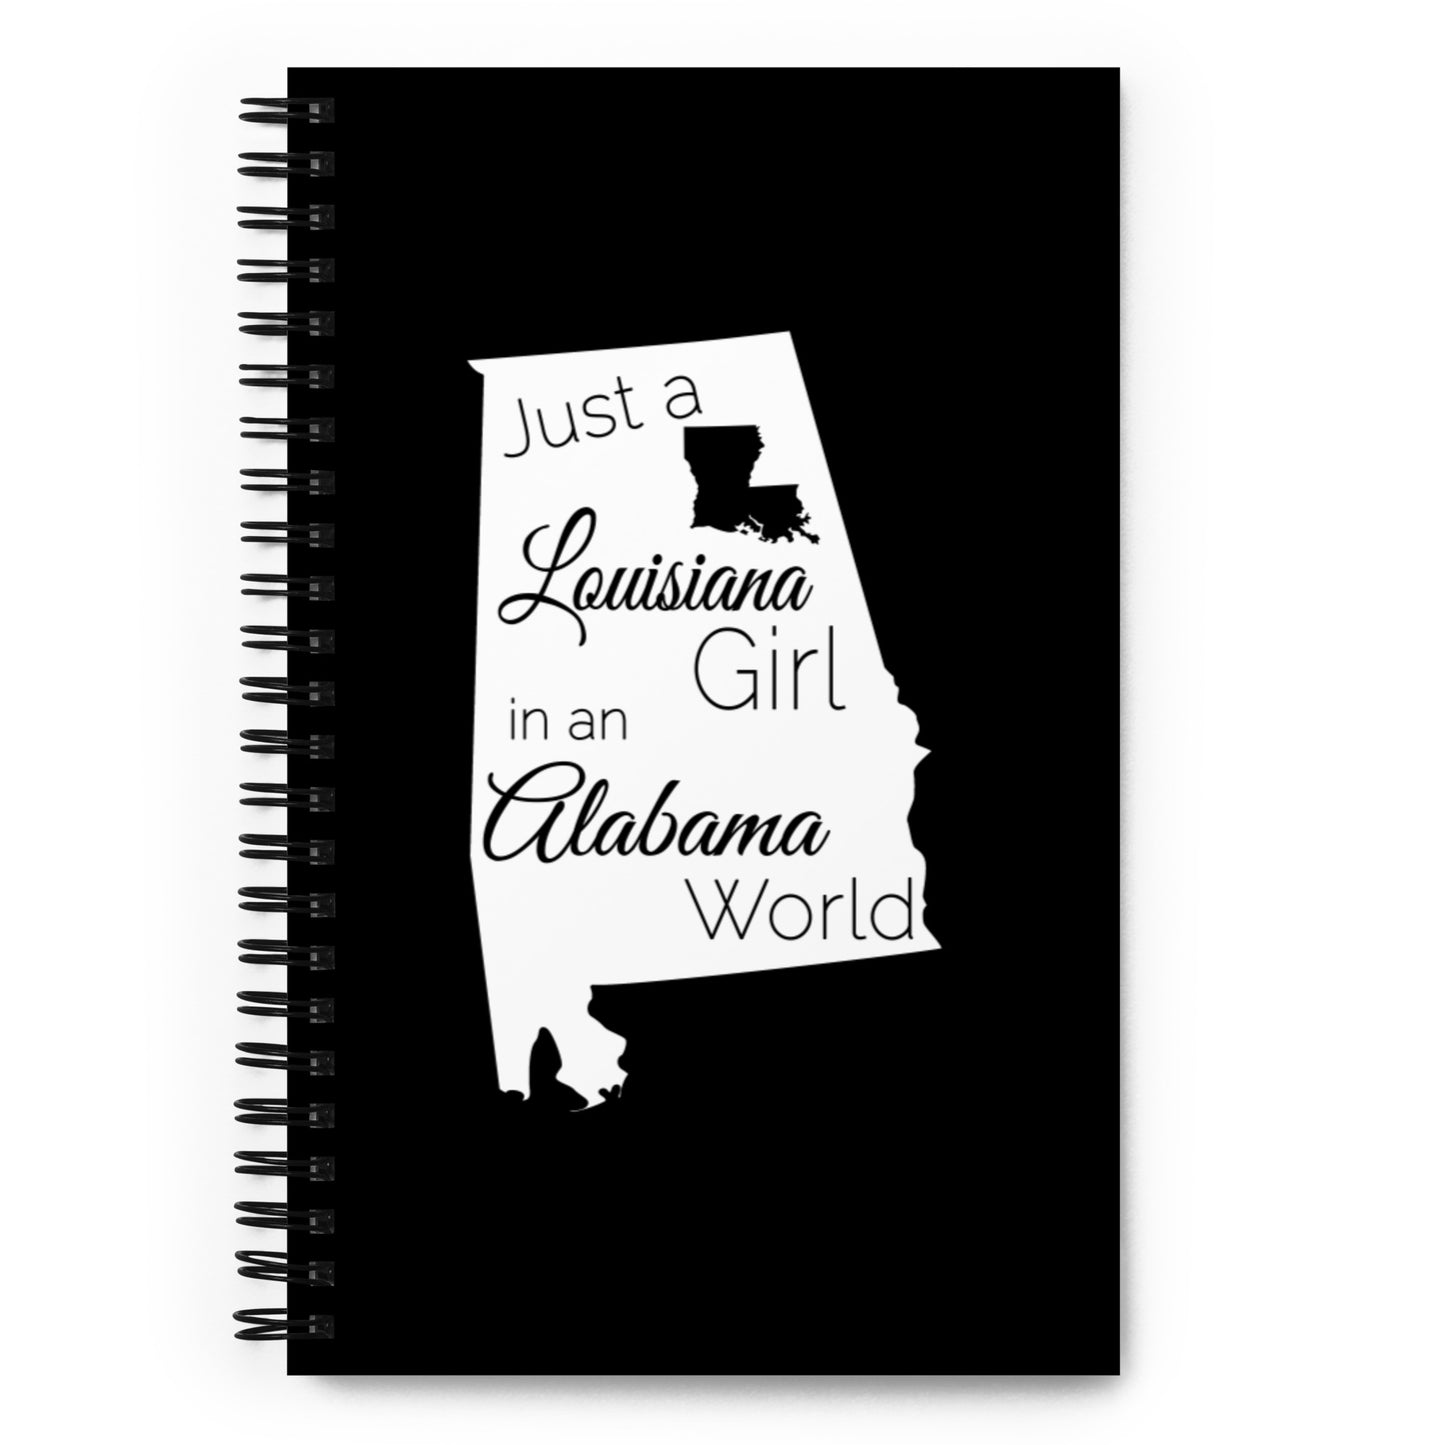 Just a Louisiana Girl in an Alabama World Spiral notebook